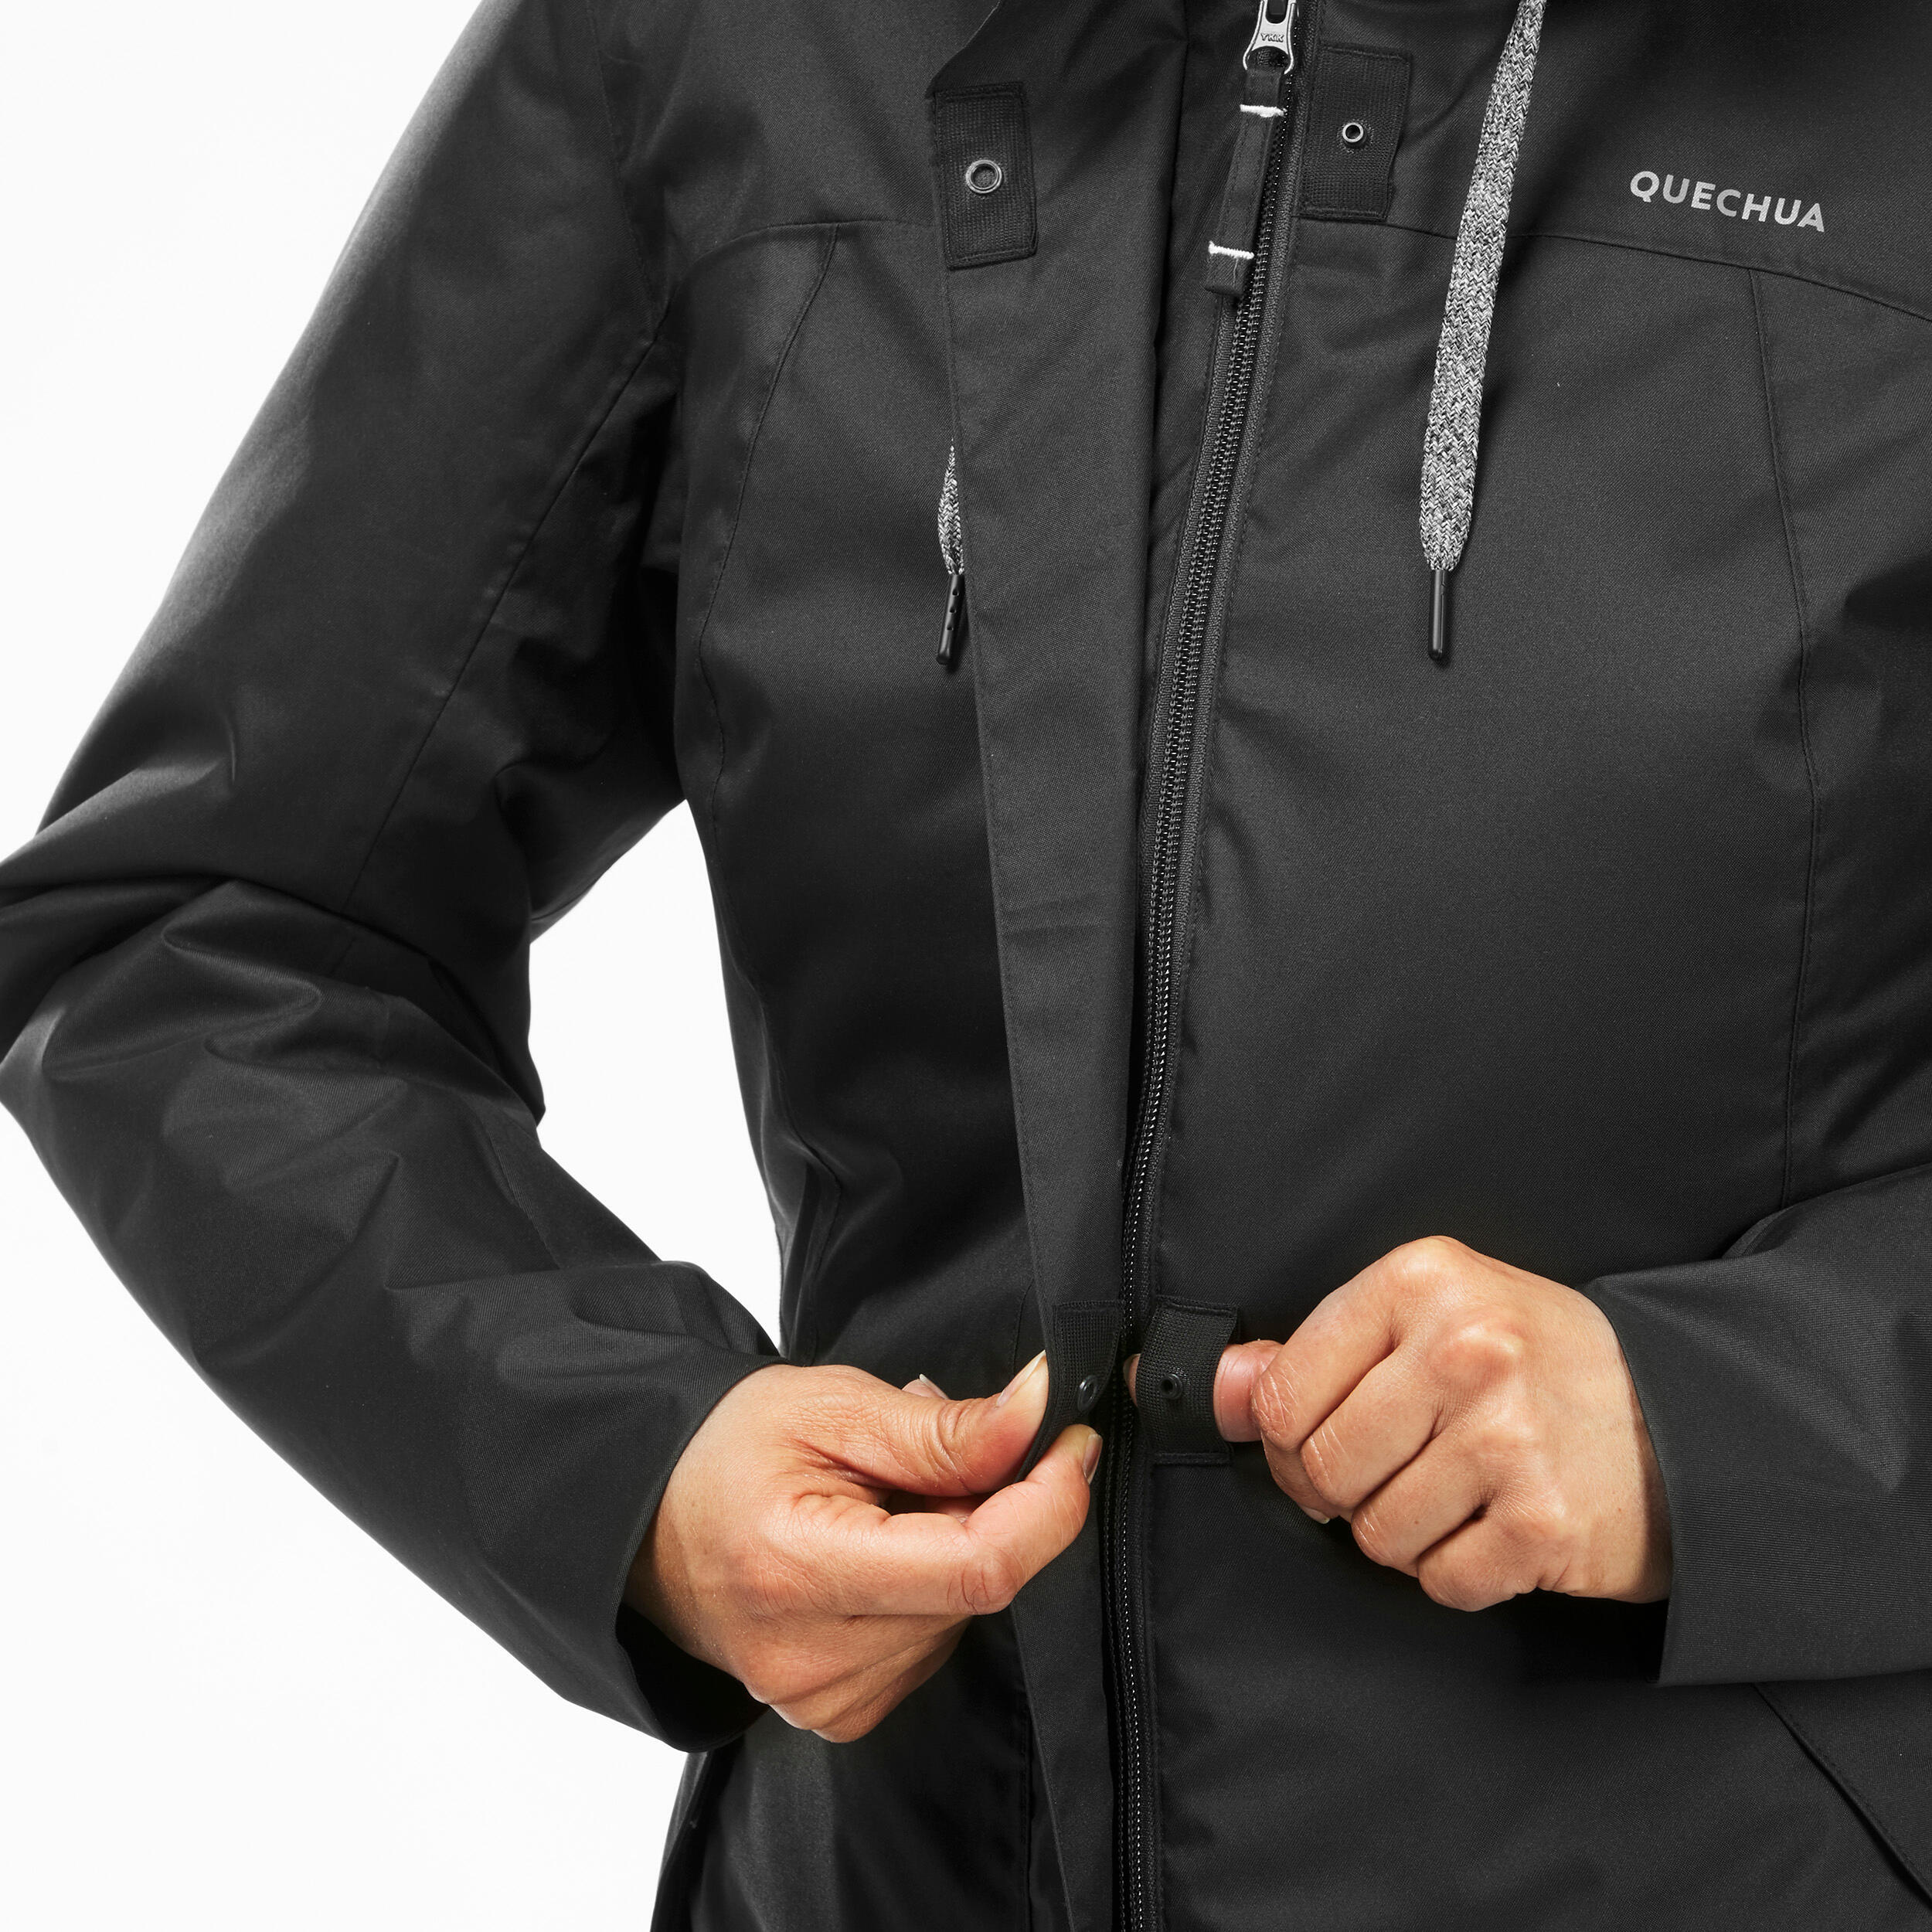 Women’s hiking waterproof winter jacket - SH500 -10°C 7/11